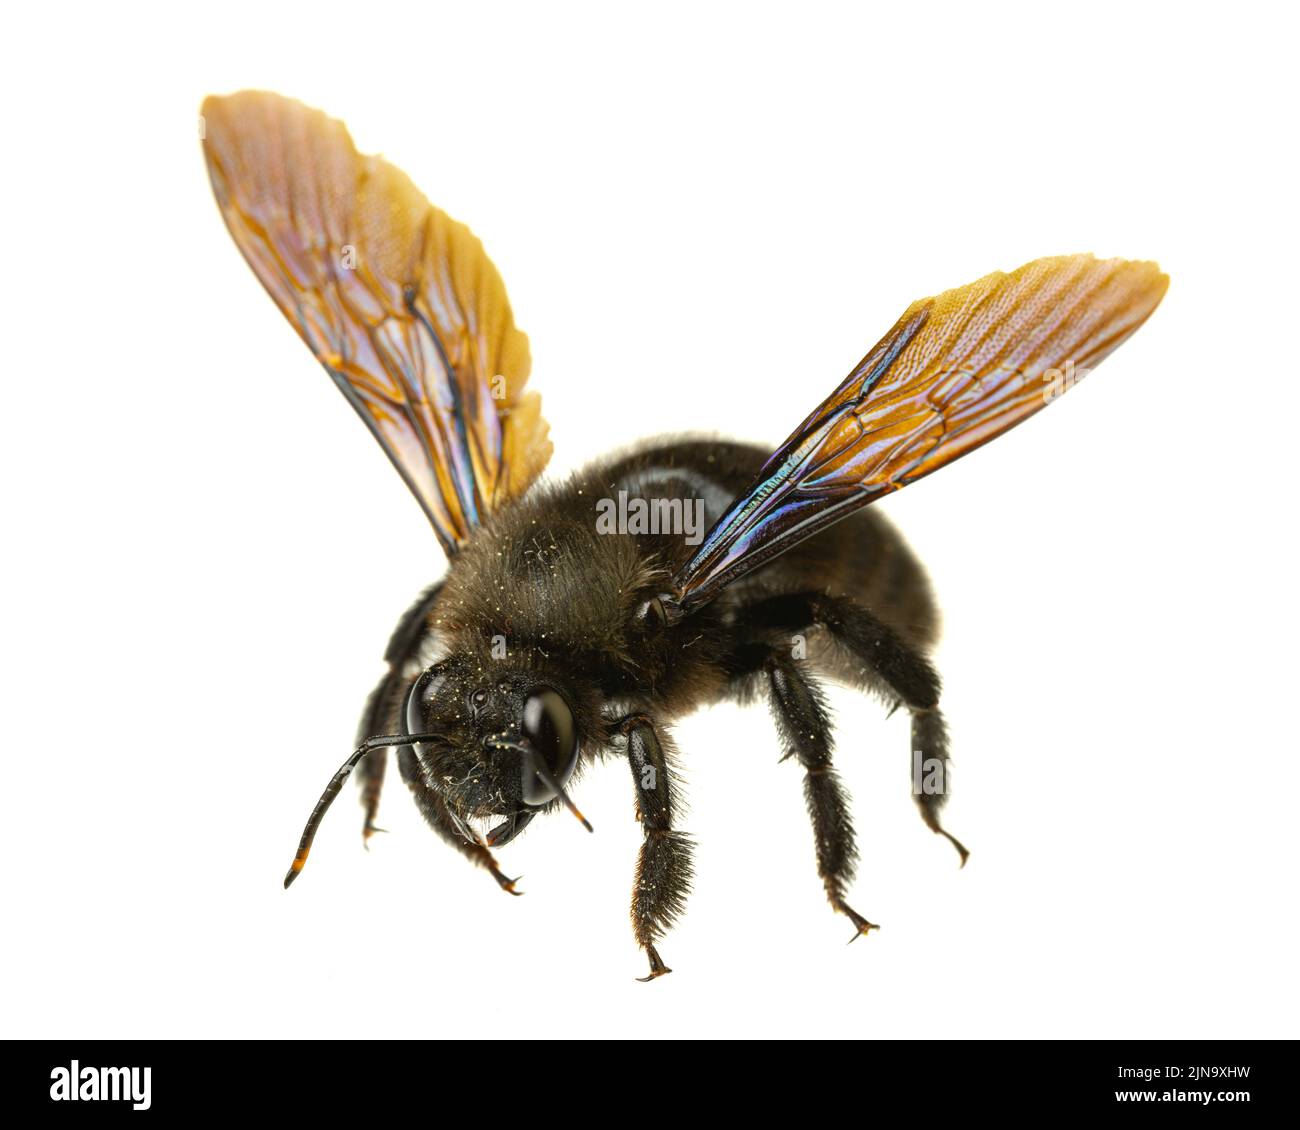 Insectos de europa - Abejas: Macro de abeja carpintero violeta macho (Xylocopa violacea german Blauschwarze Holzbiene) aislada sobre fondo blanco con espre Foto de stock